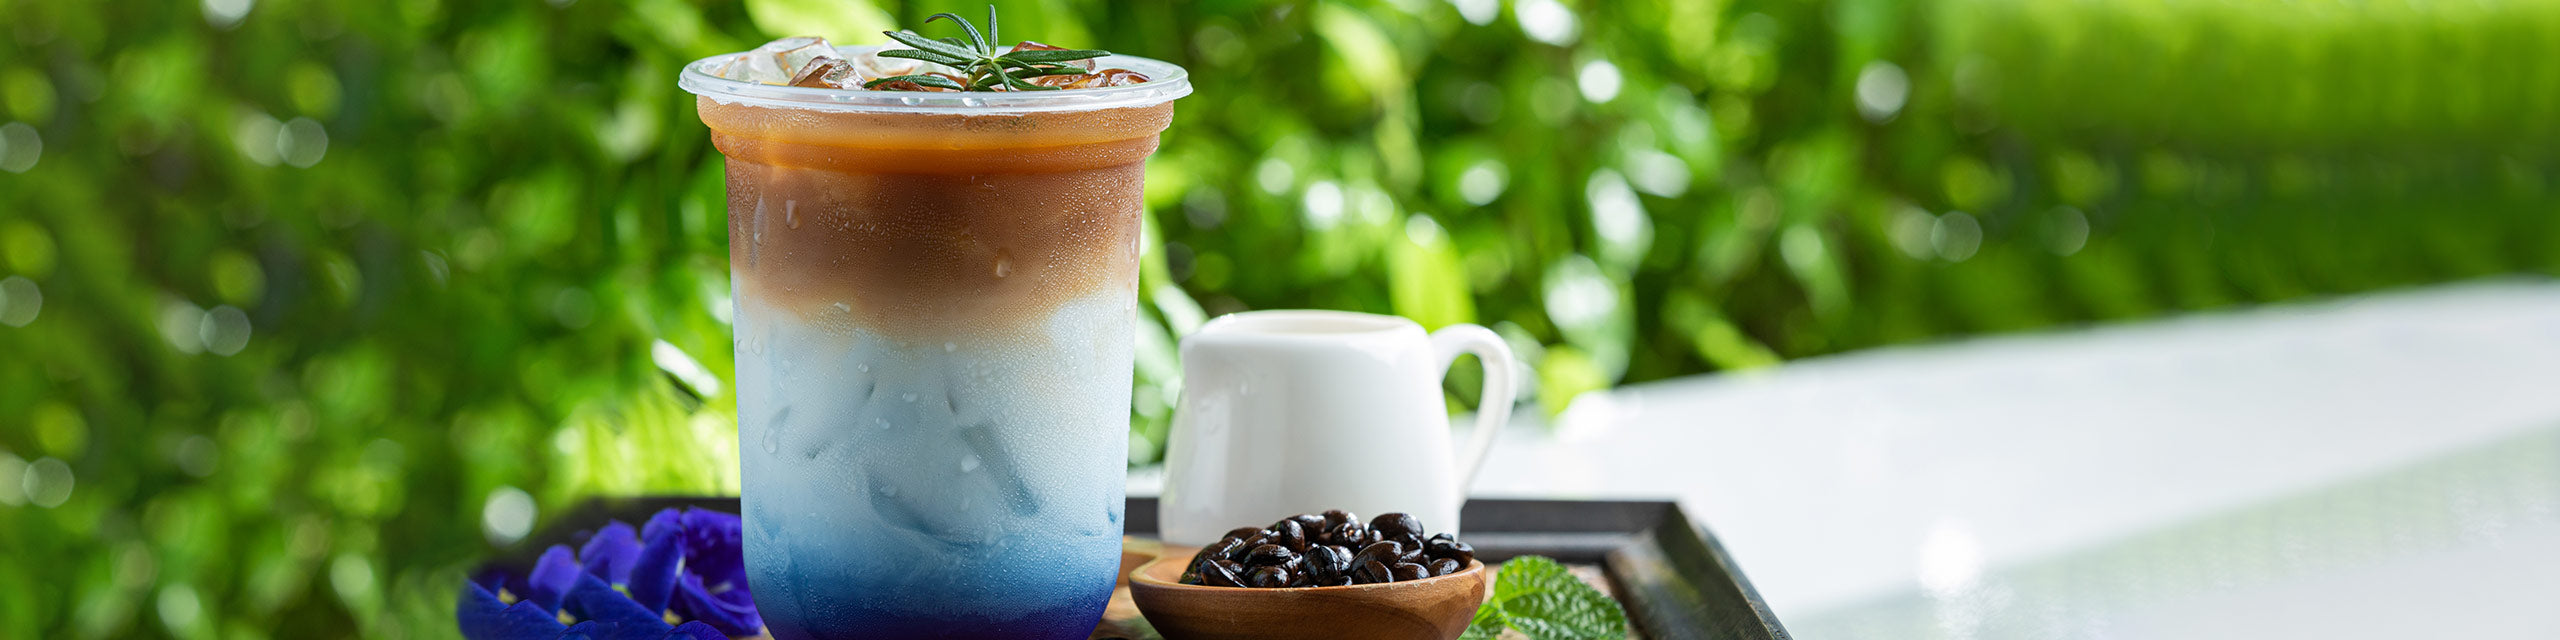 5 einfache Rezepte für leckere kalte Kaffeespezialitäten